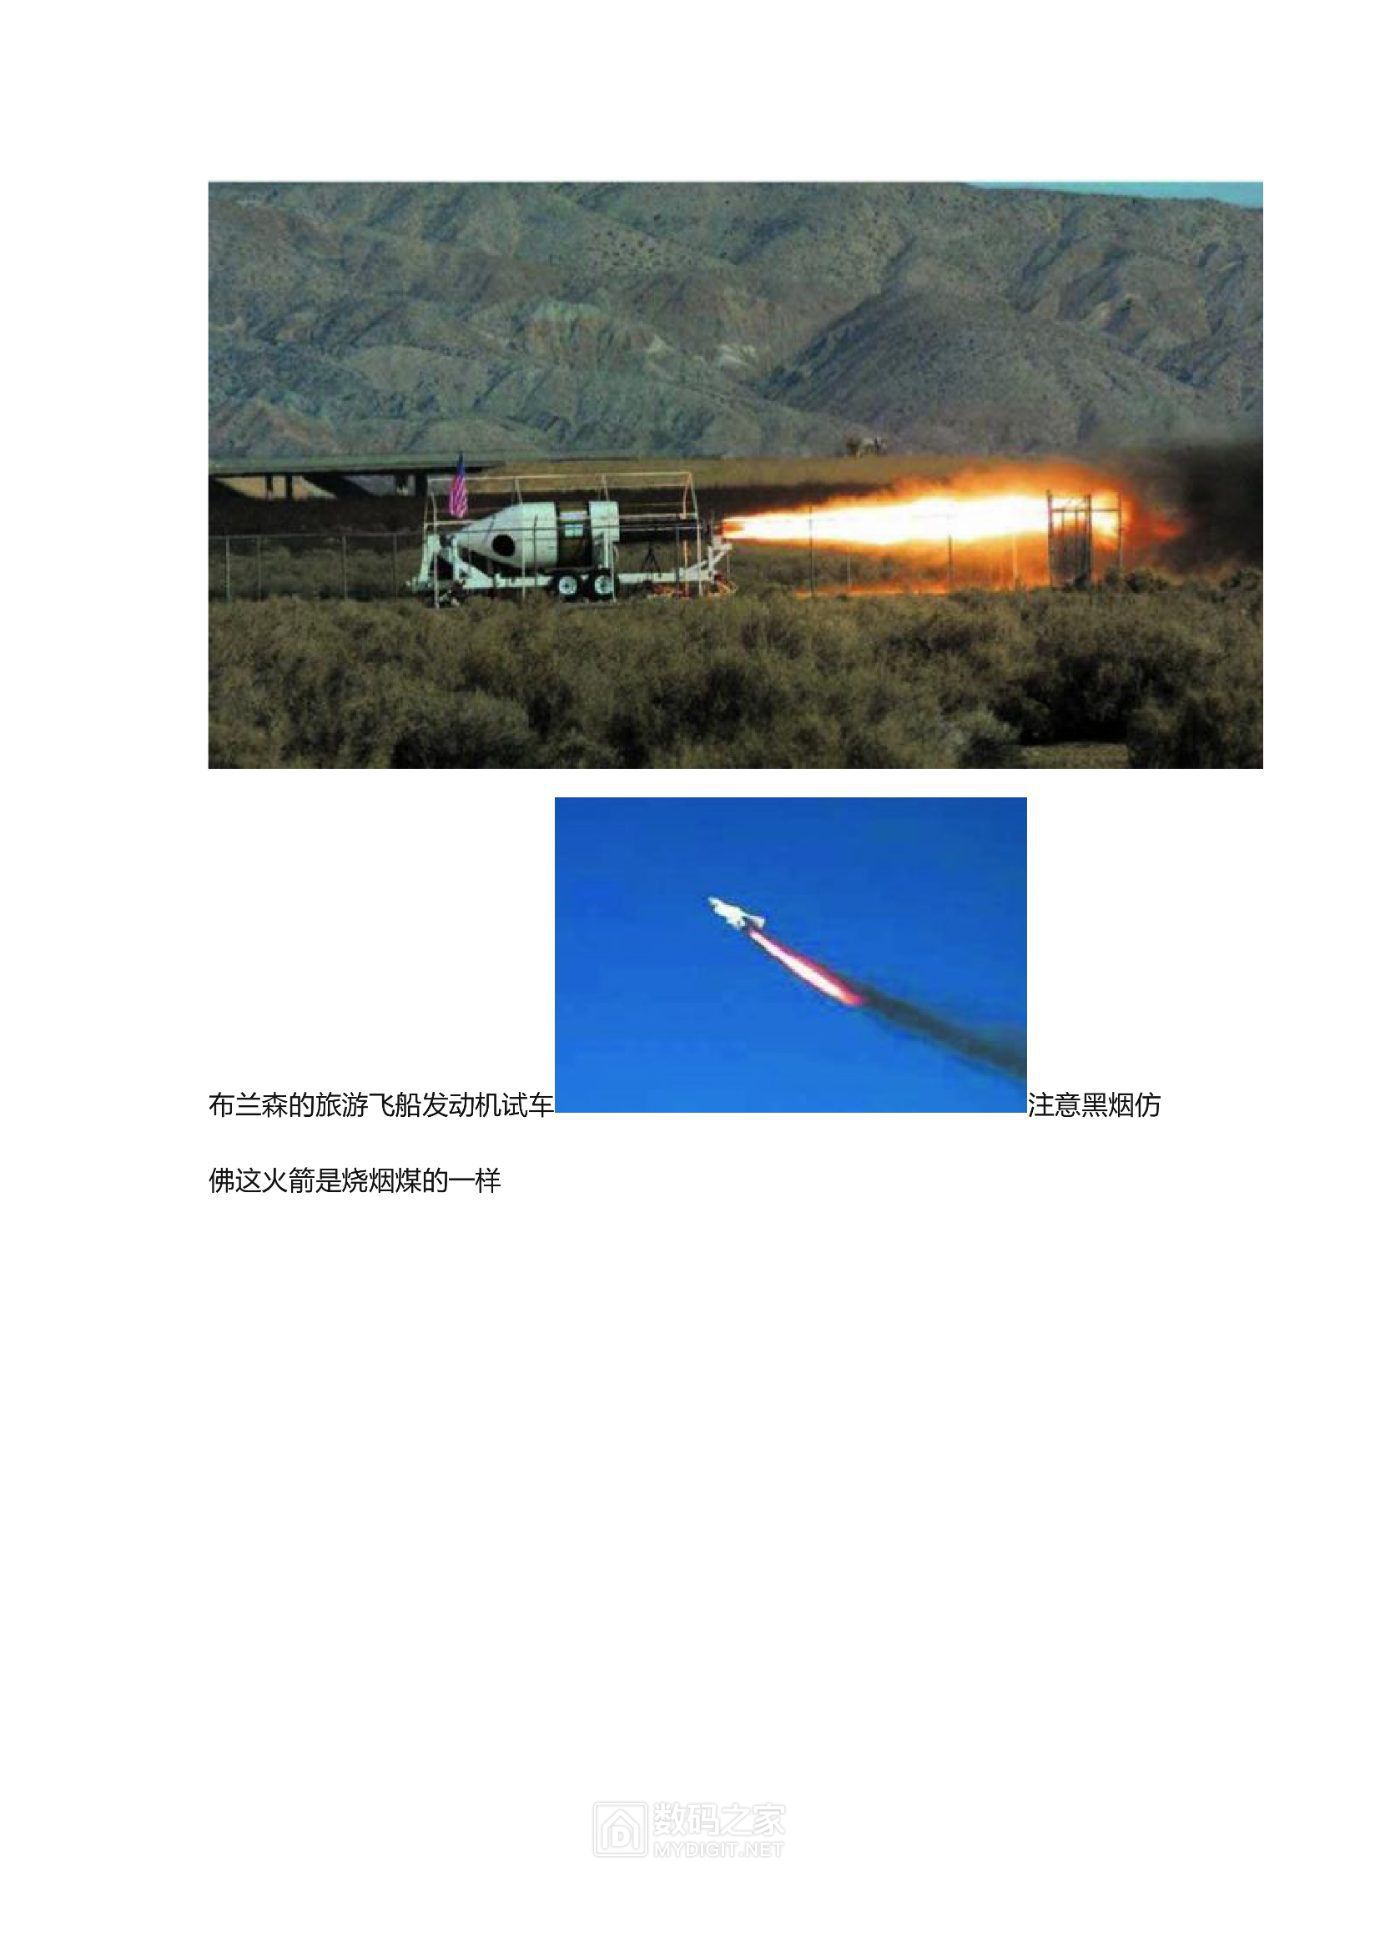 液体火箭发动机0032.jpg